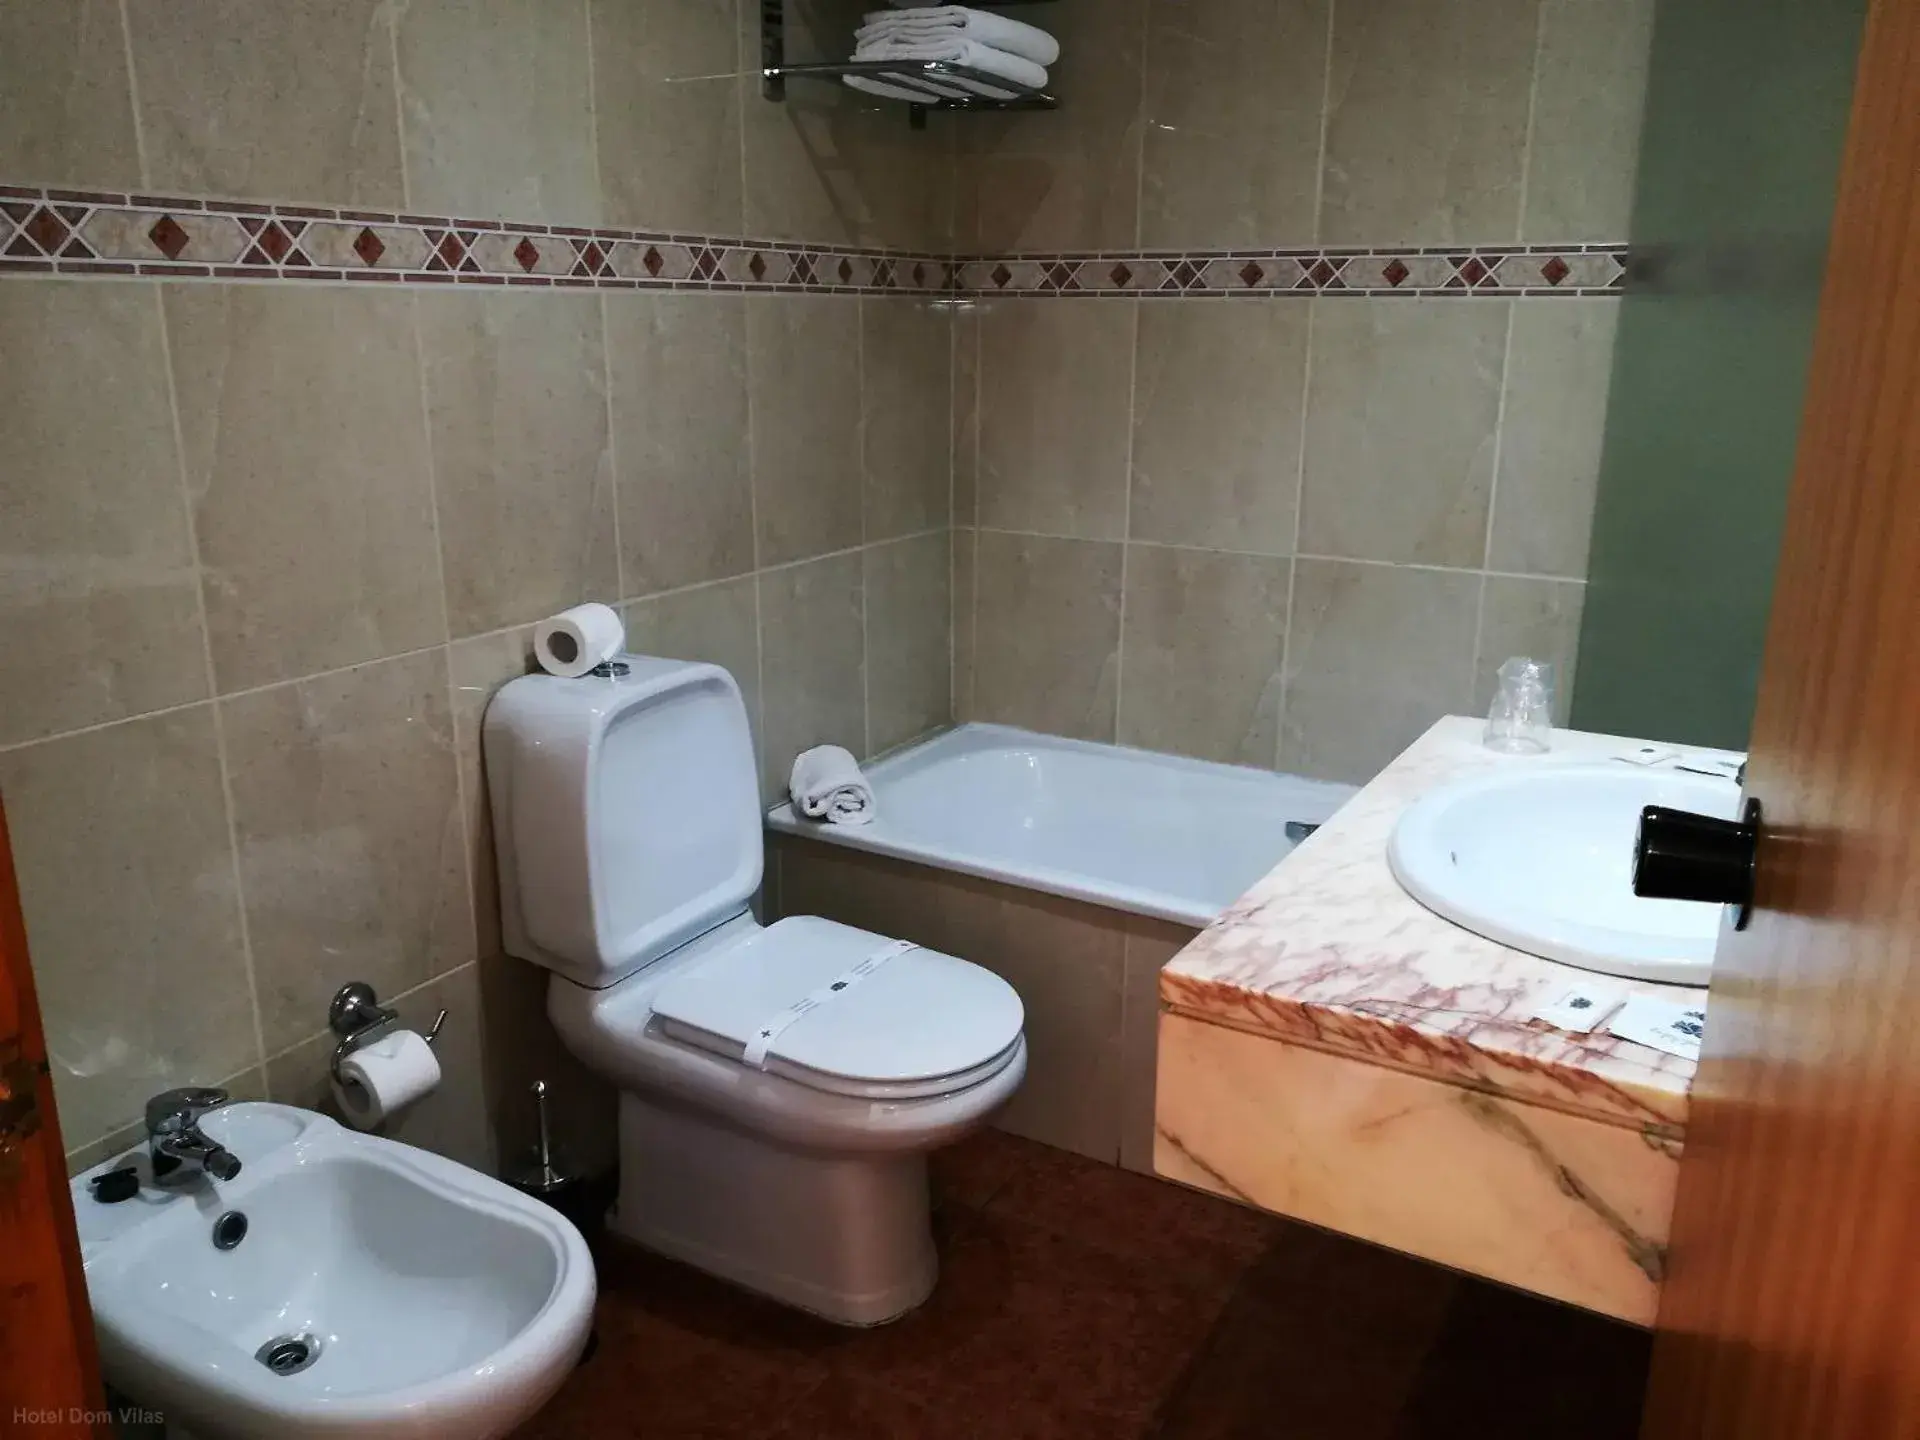 Toilet, Bathroom in Hotel Dom Vilas